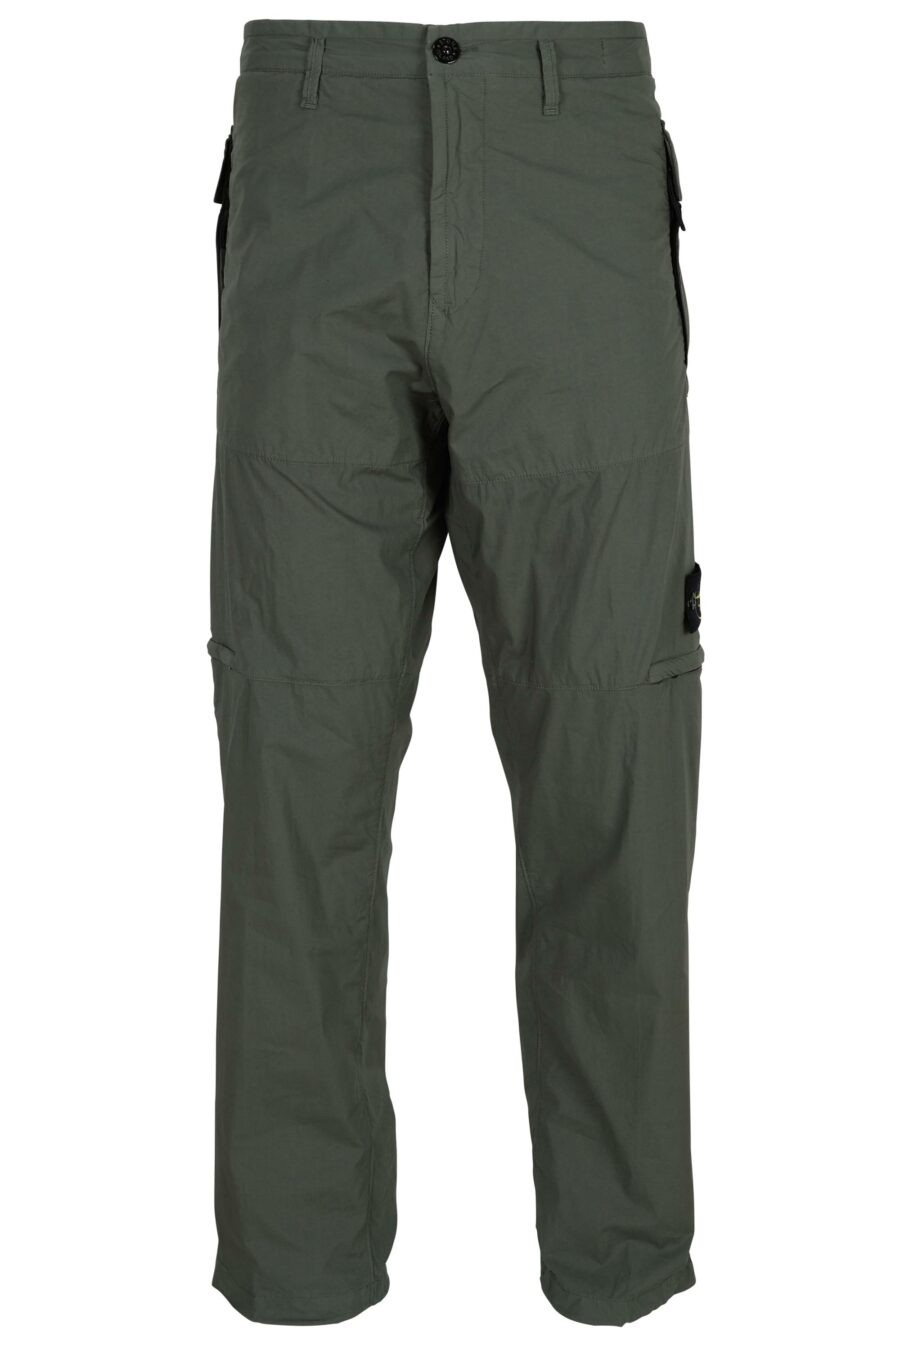 Pantalón verde militar "regular" con logo parche brújula - 8052572955013